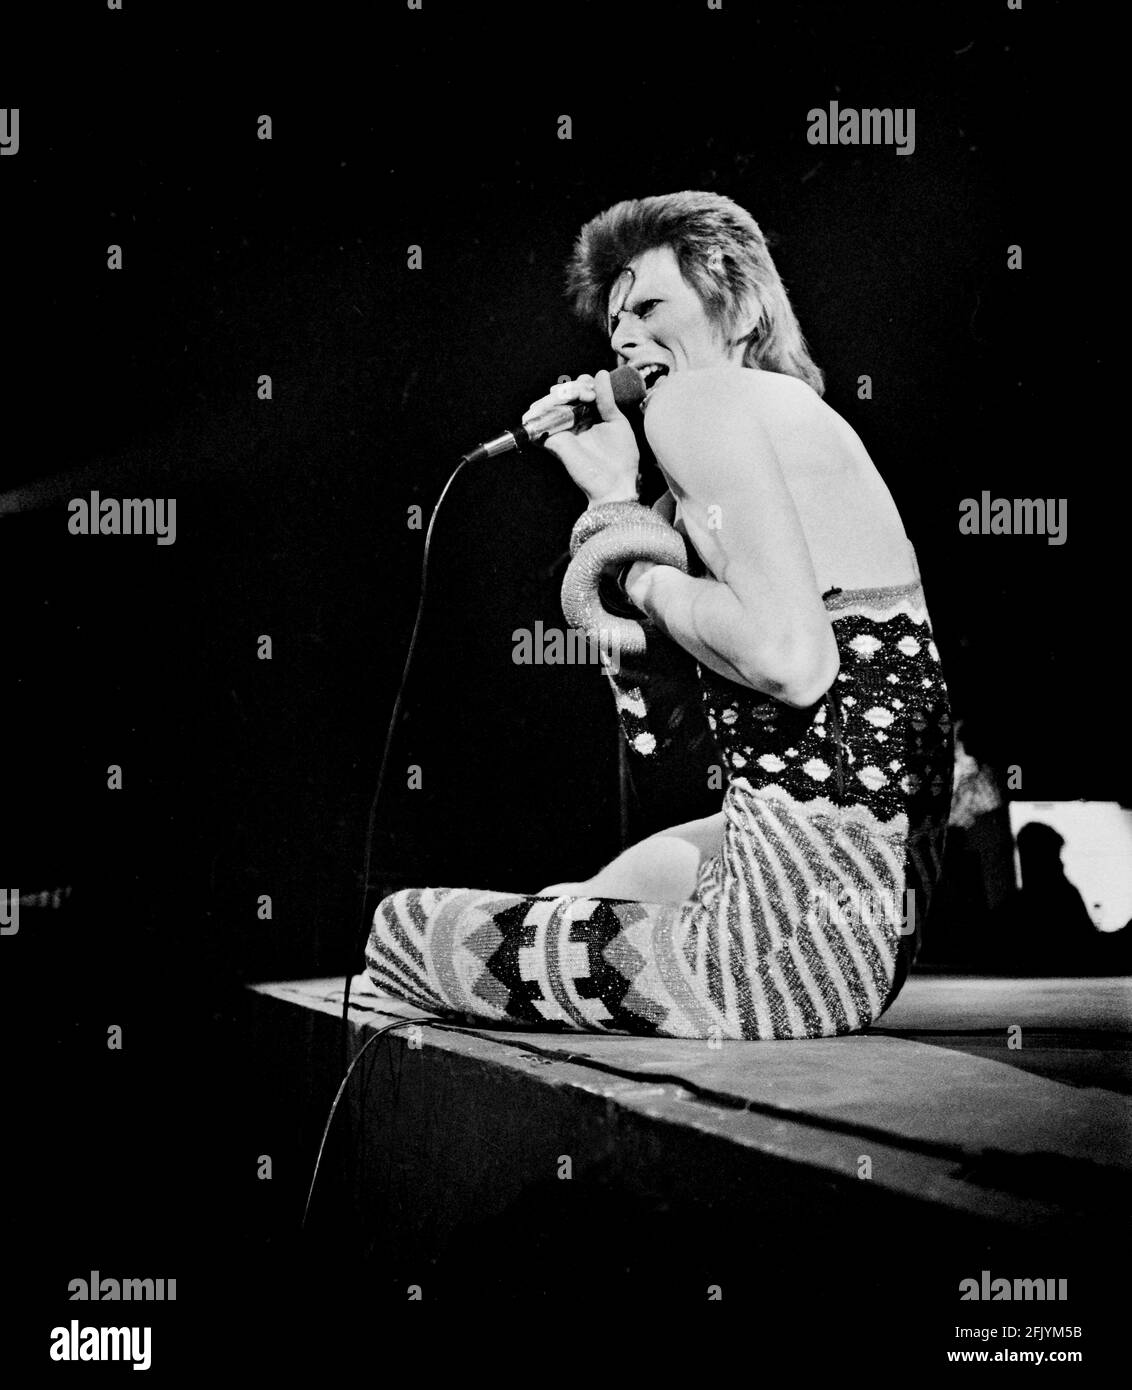 LONDRA: David Bowie suona dal vivo sul palco all'Earls Court Arena il 12 1973 maggio durante il tour di Ziggy Stardust (Foto di Gijsbert Hanekroot) Foto Stock